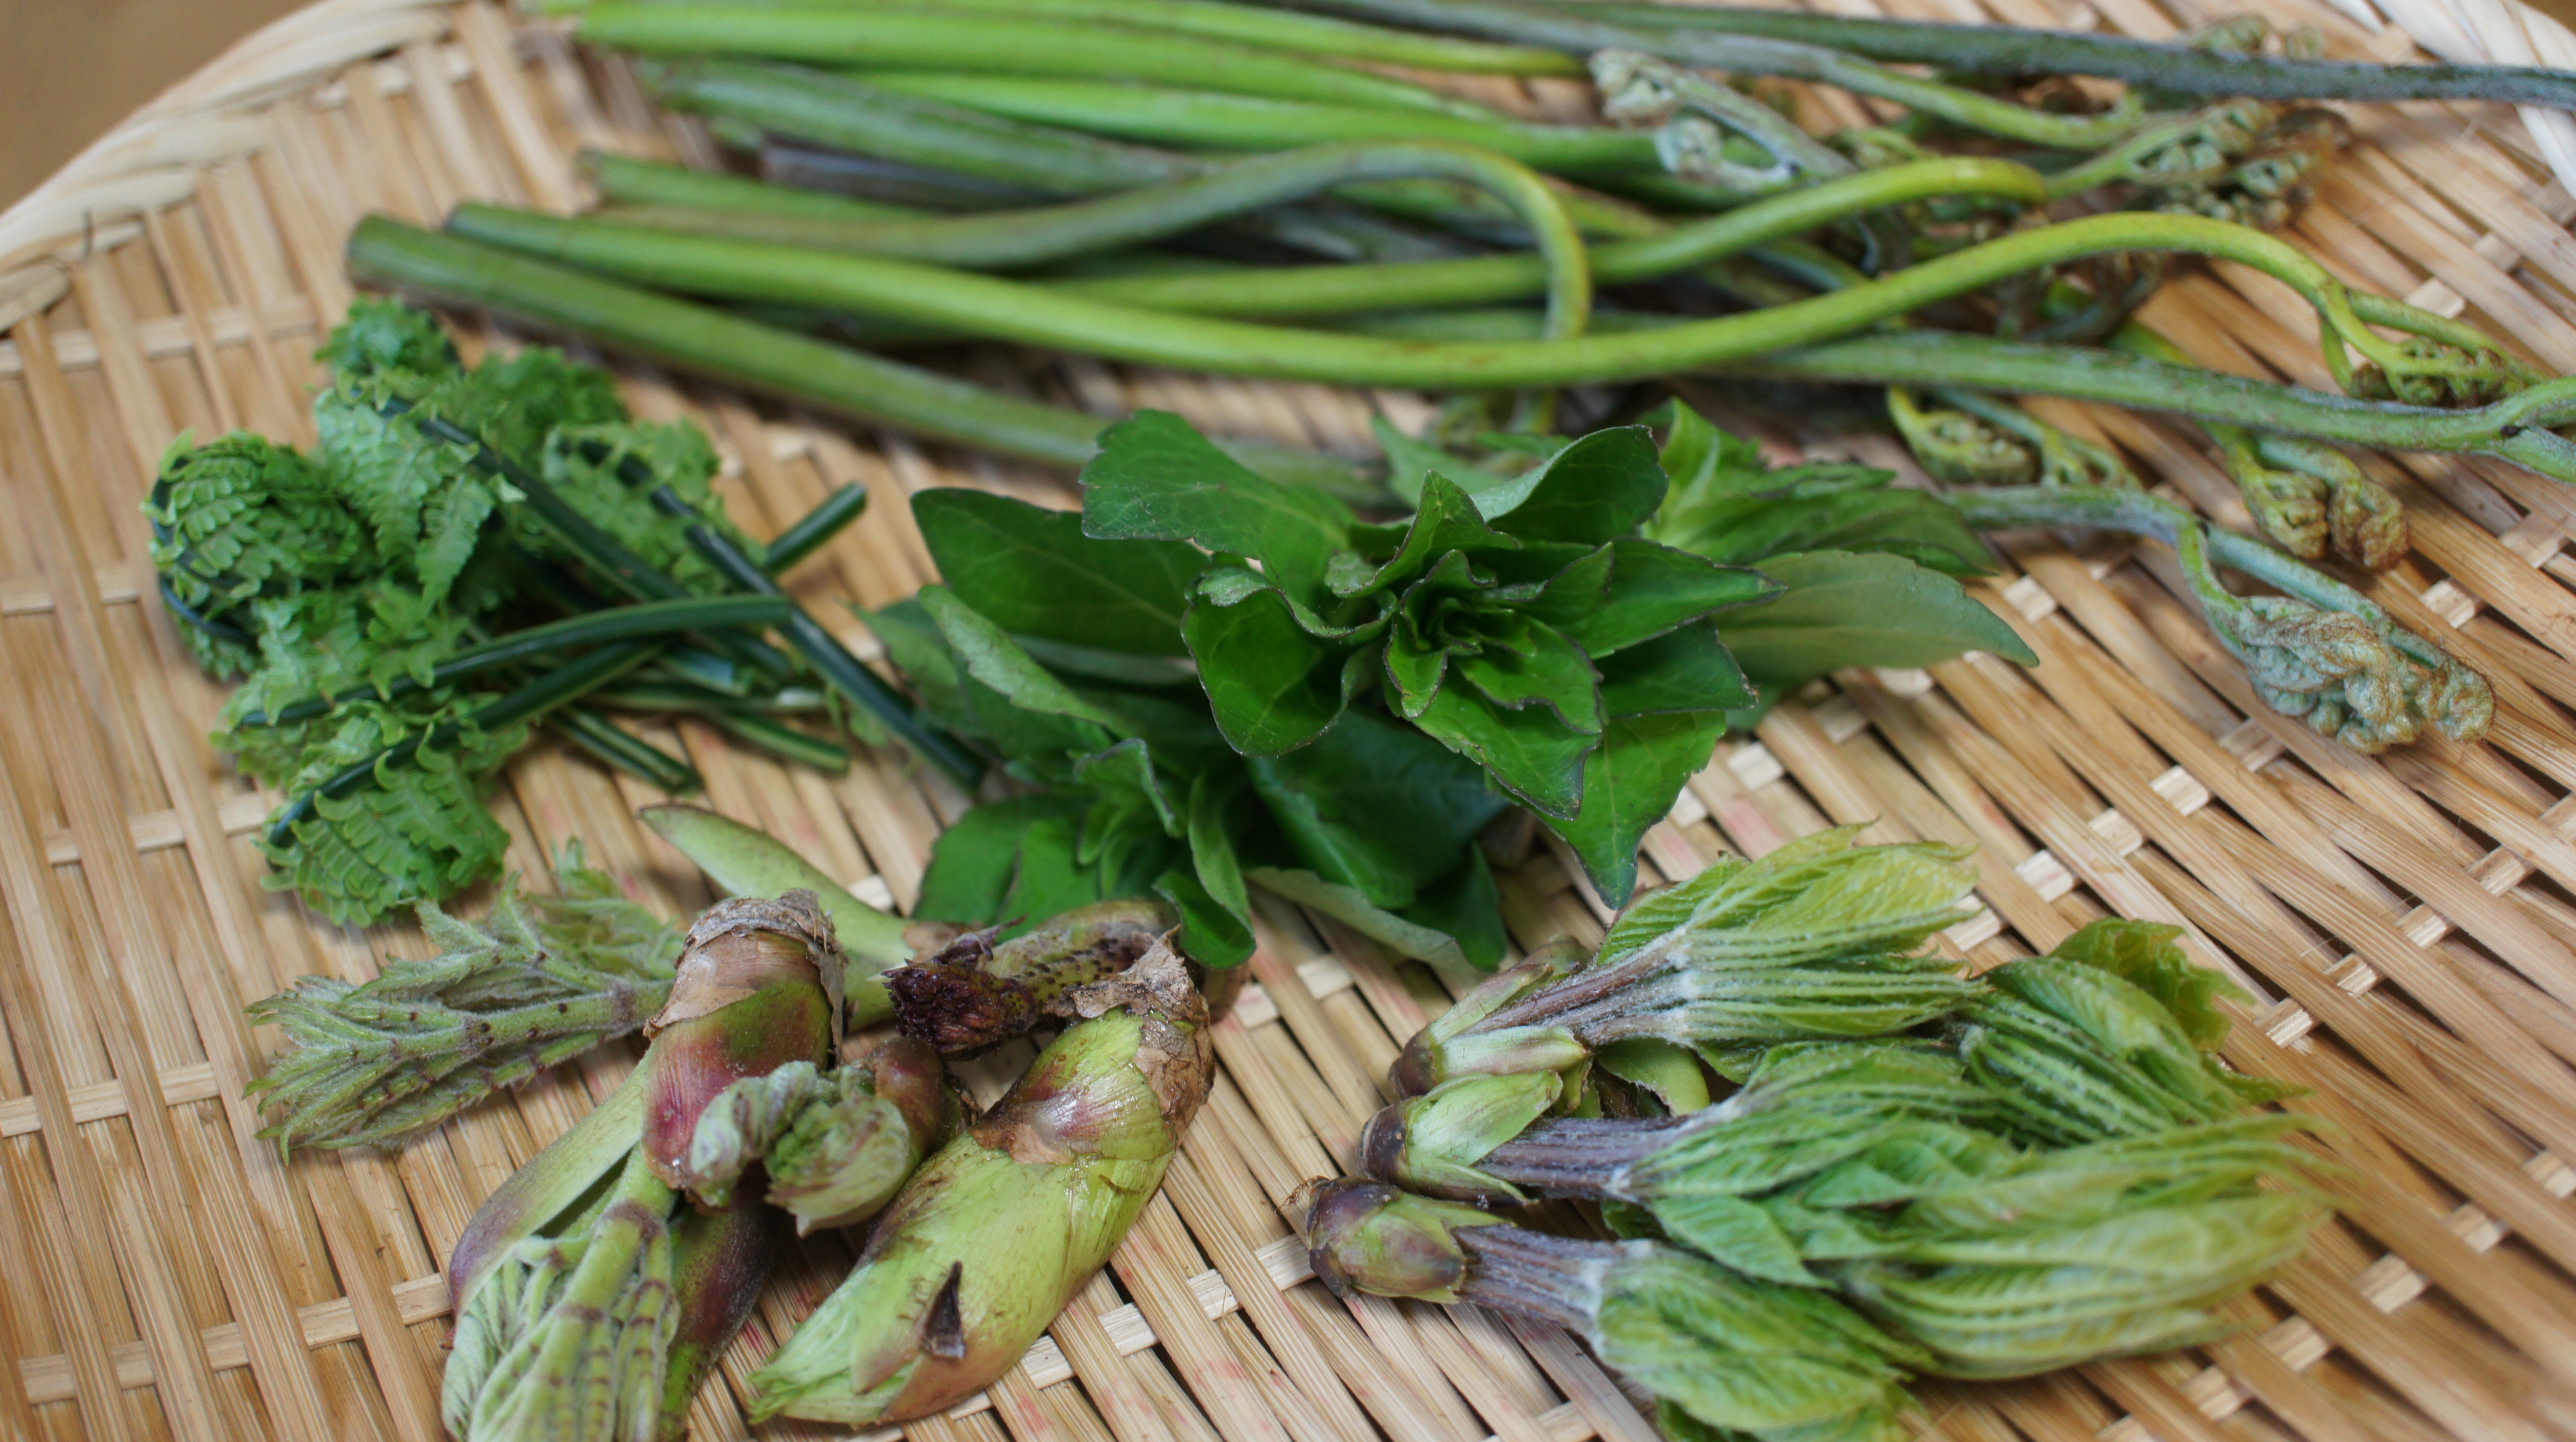 佐渡の春の山で採れた山菜が美味しい季節です 旅館番頭の佐渡観光情報ブログ